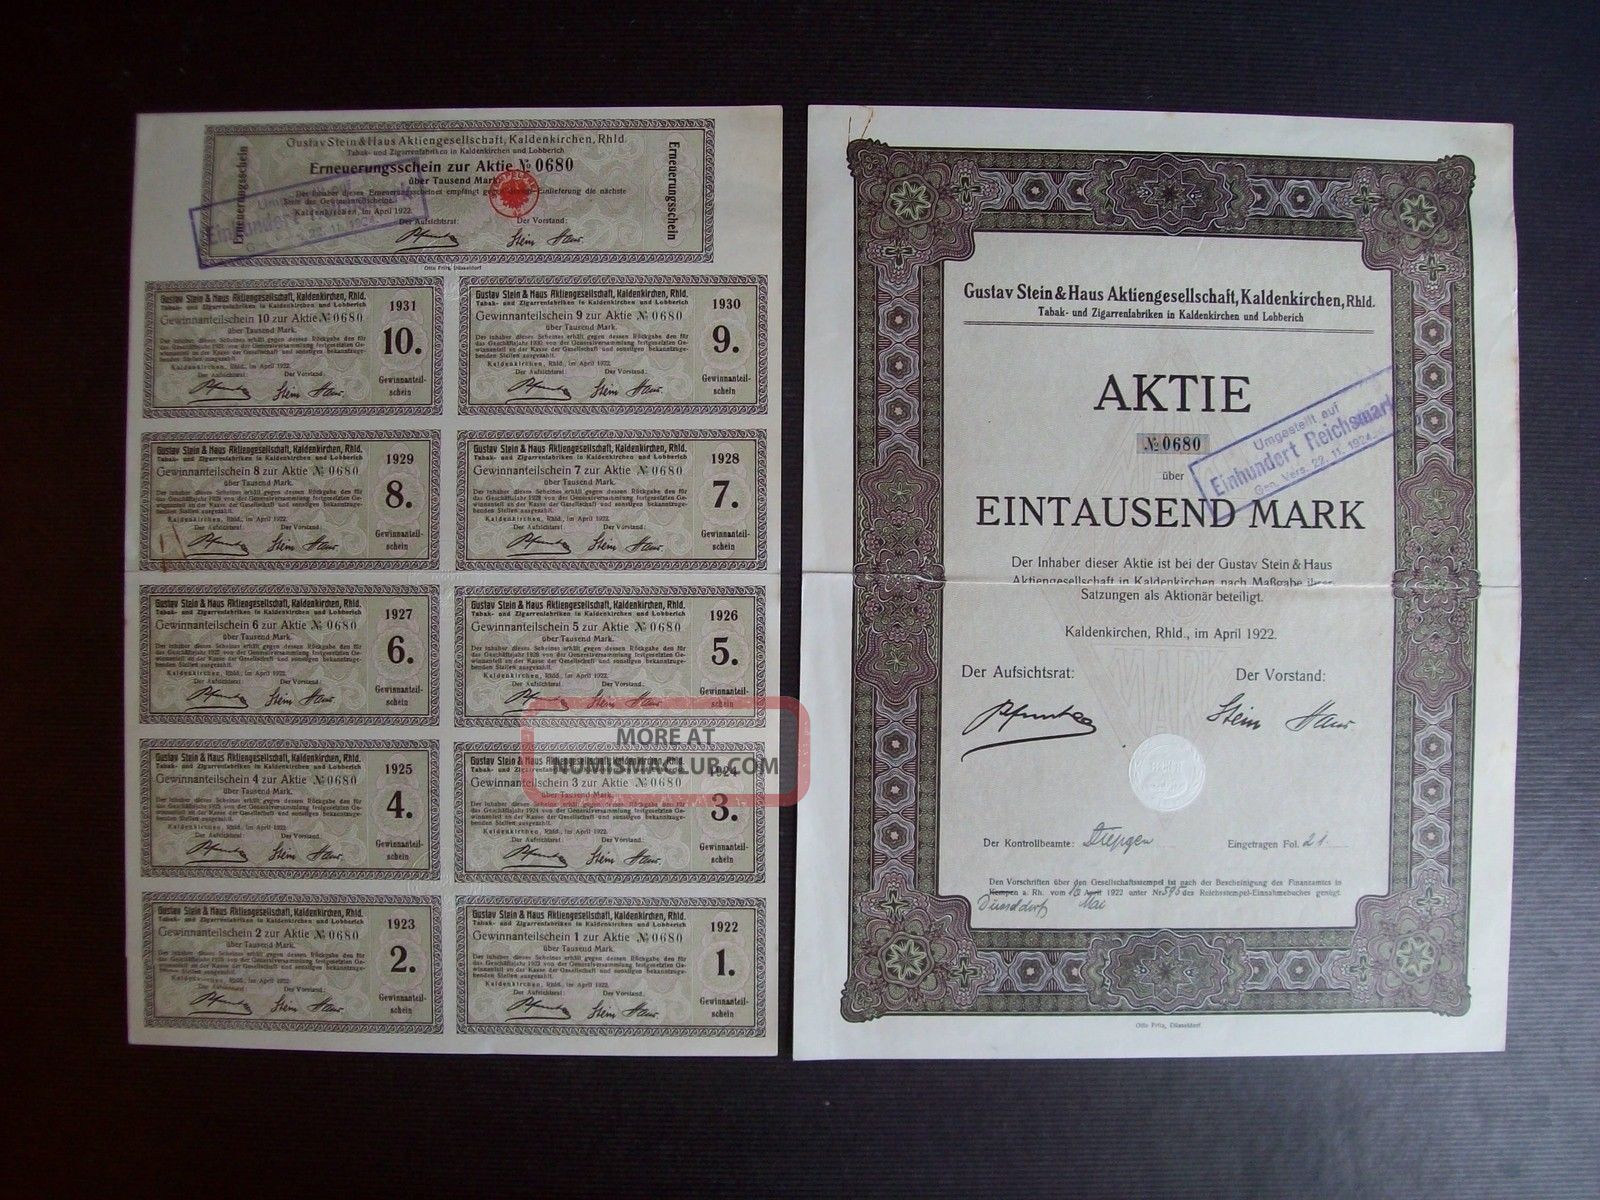 Germany 1922 Bond Certificate Gustav Stein Zigarettenfabrik Kaldenkirchen.  A9794 World photo